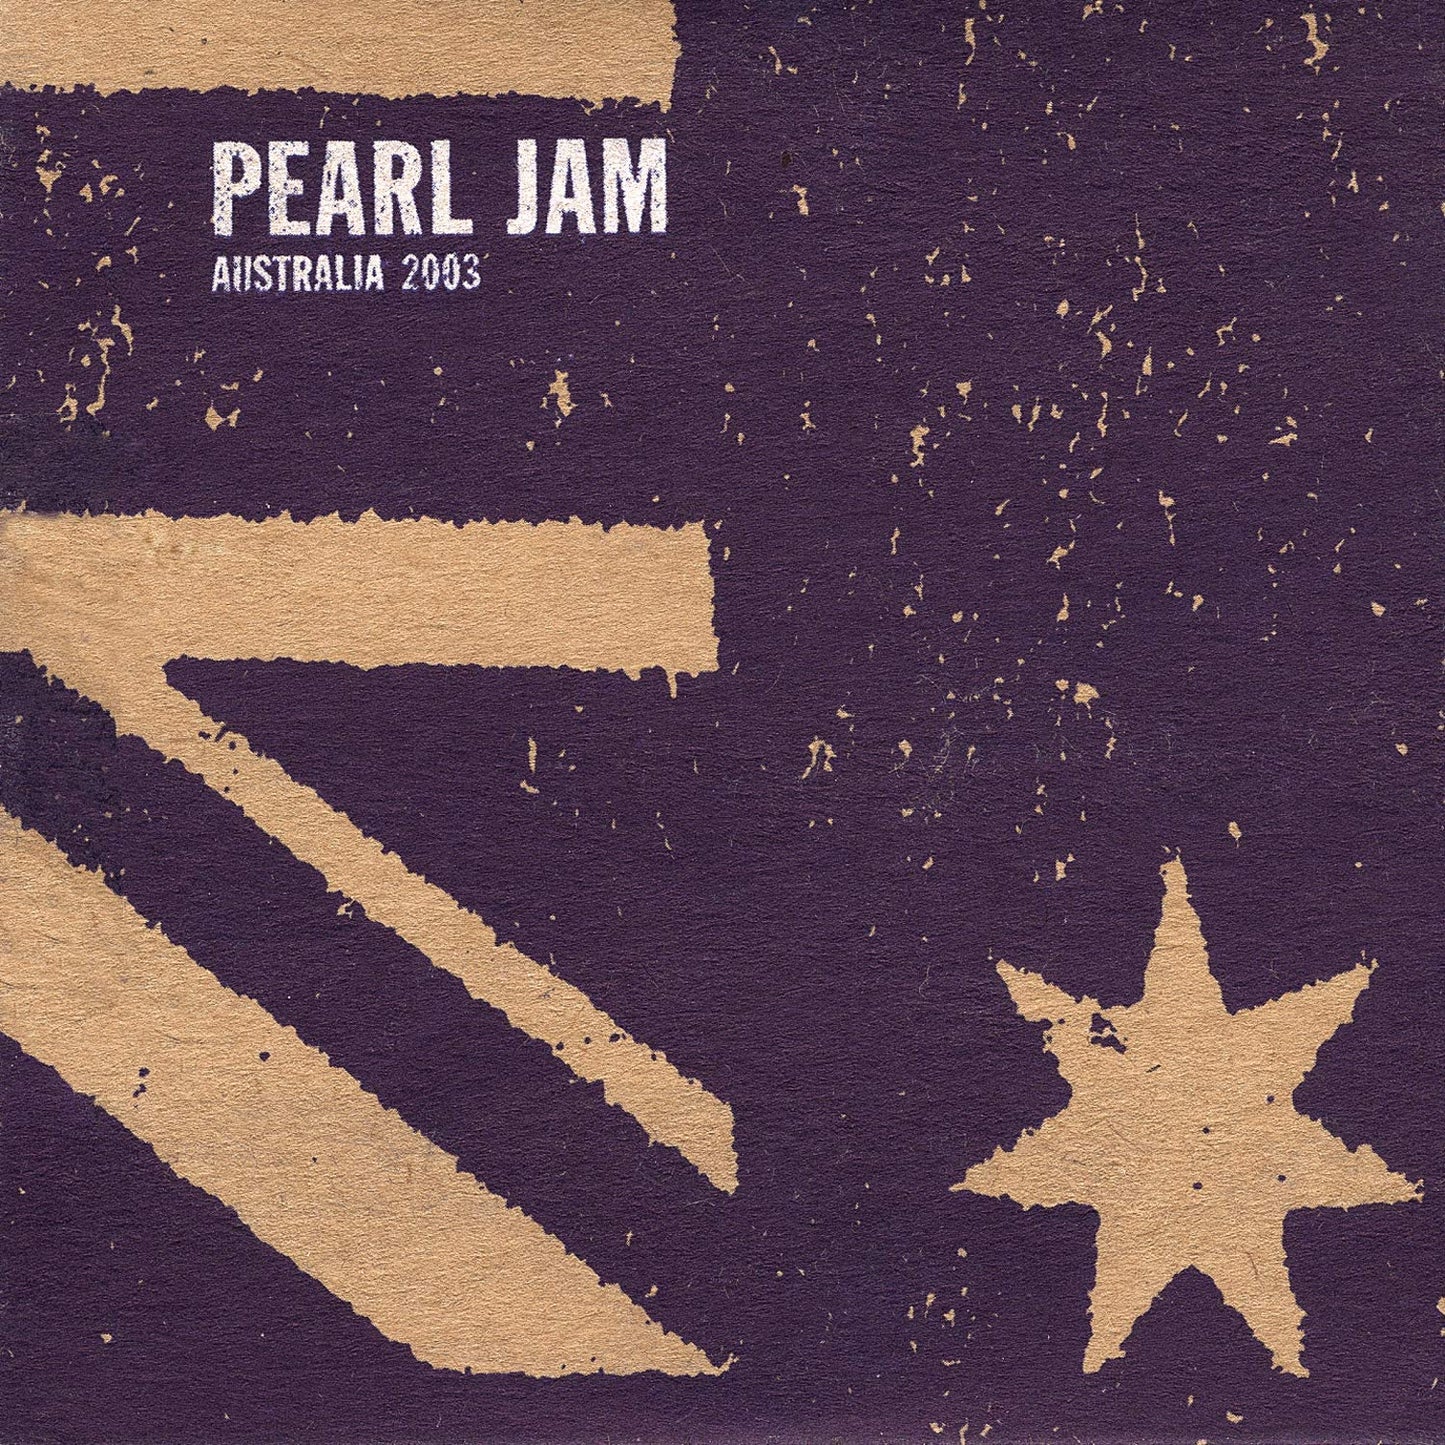 Perth/ Australia [Audio CD] Pearl Jam